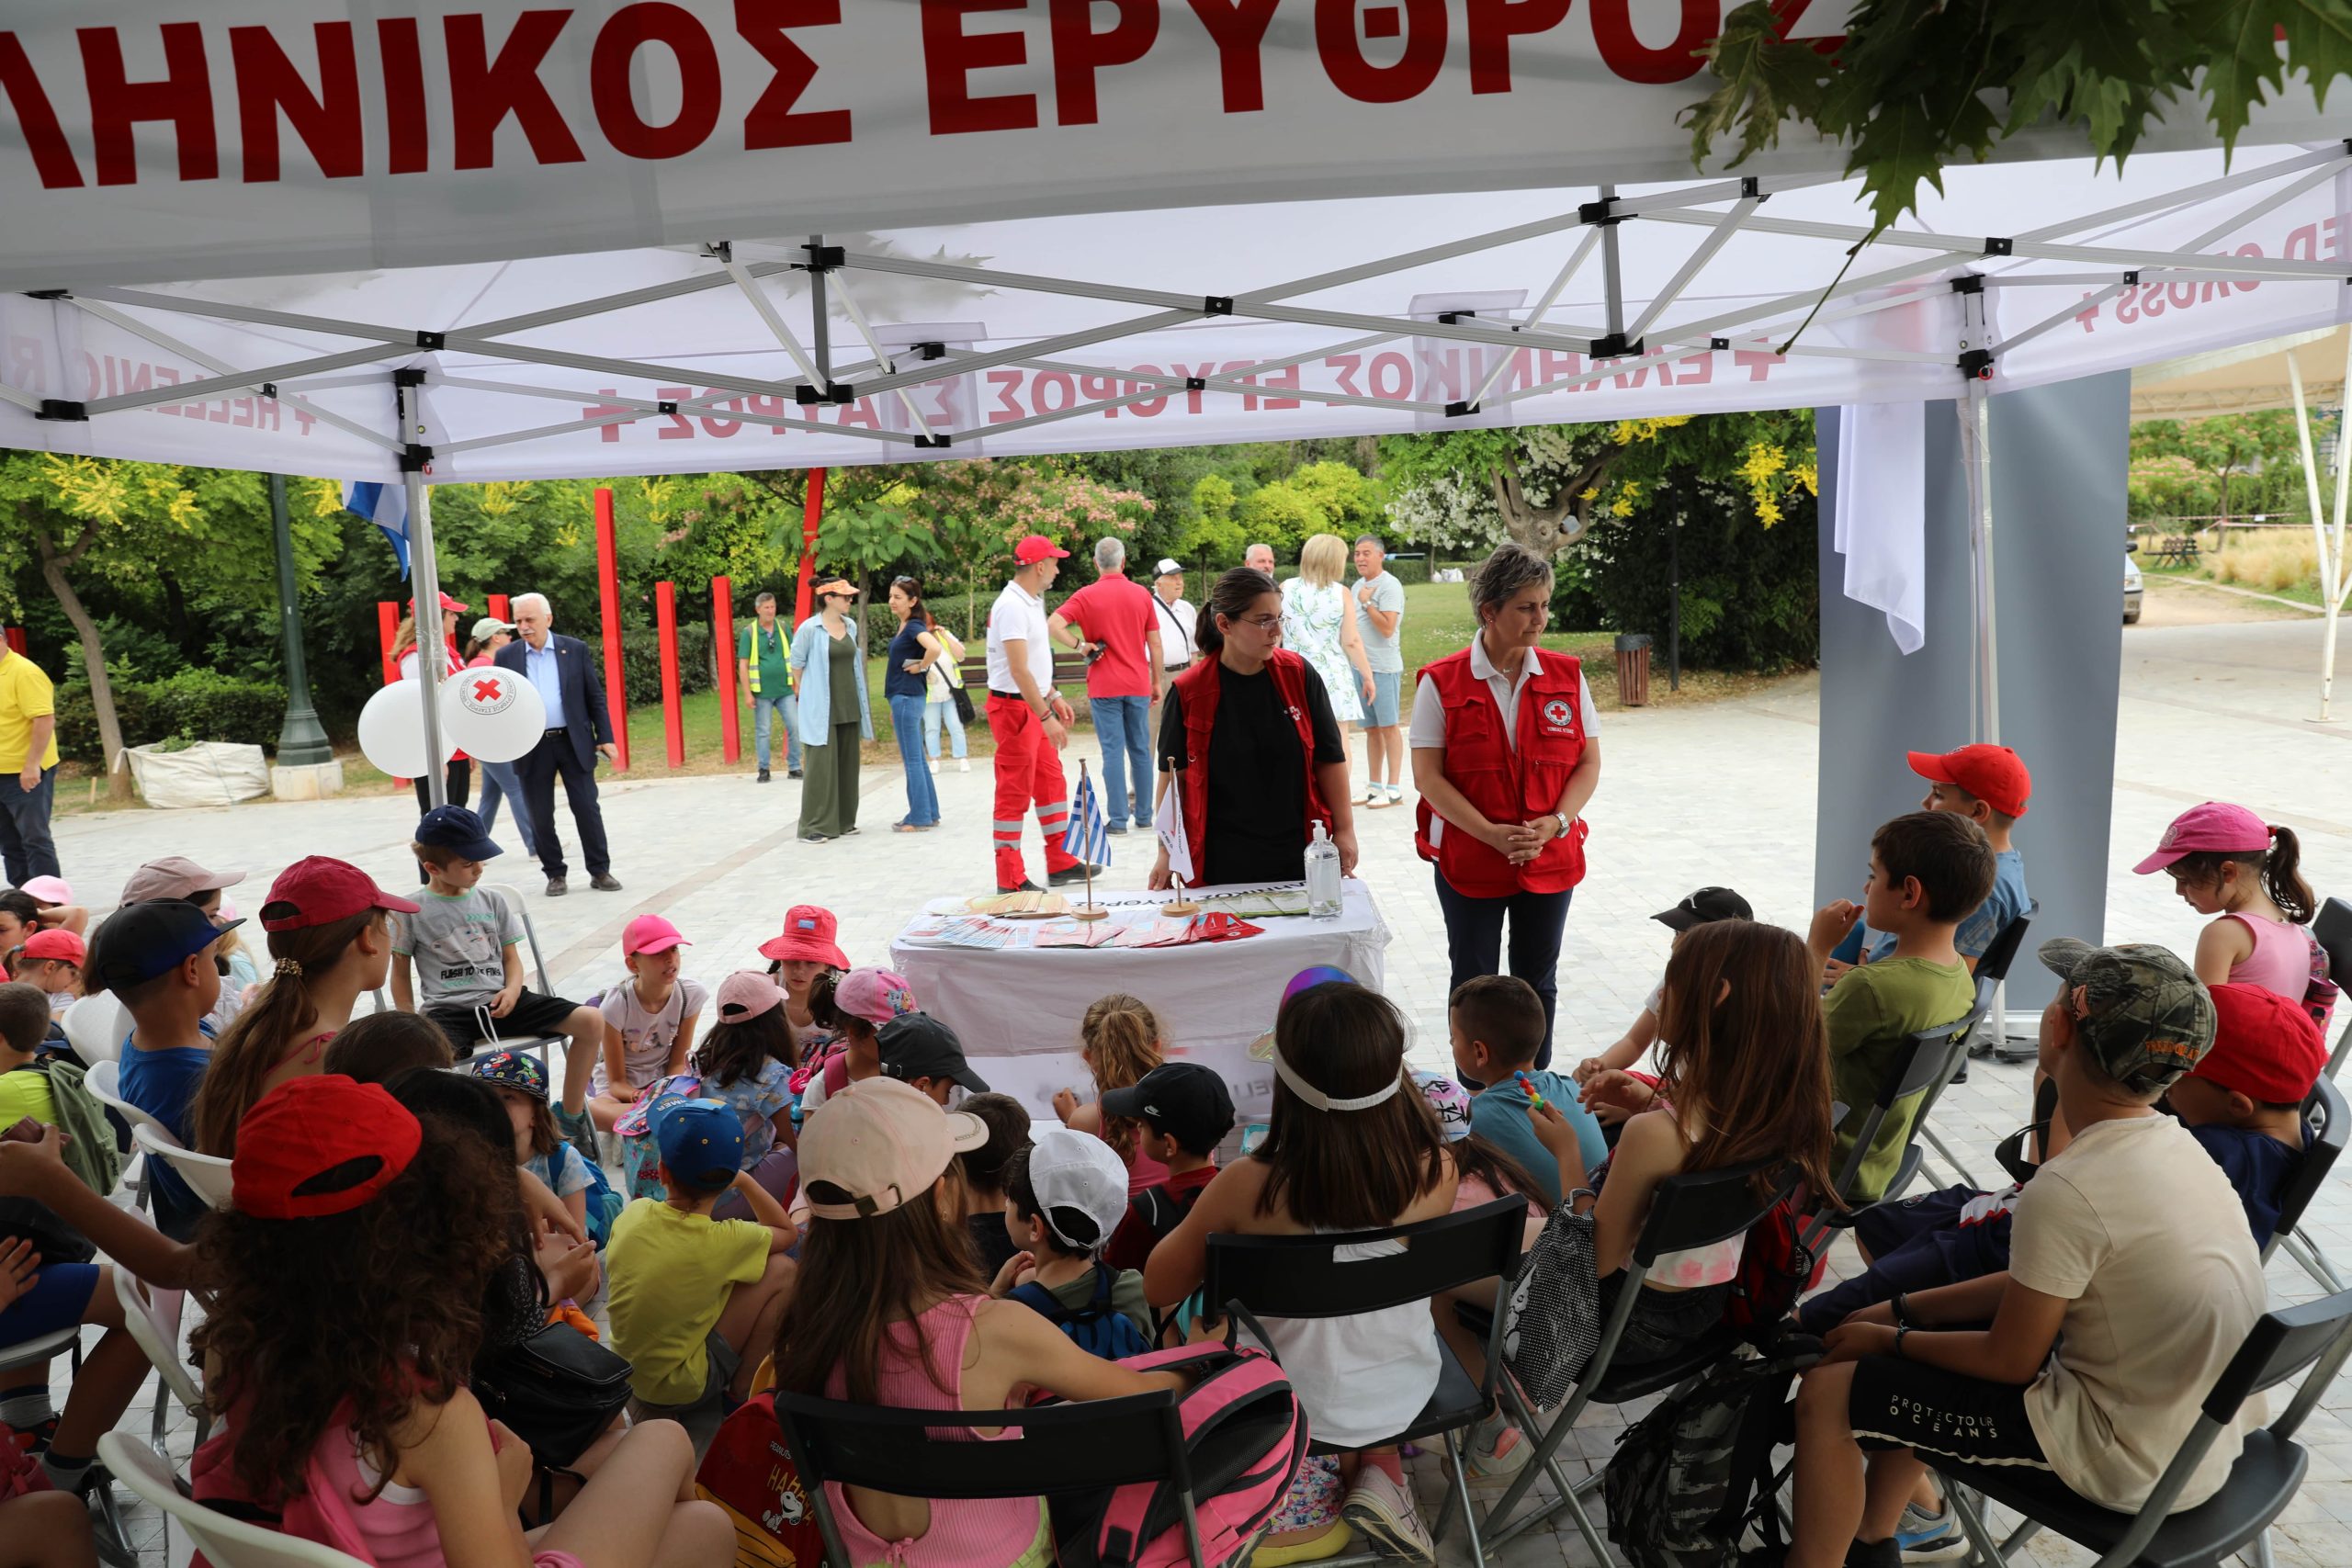 Ο Ελληνικός Ερυθρός Σταυρός ενημέρωσε 72 μαθητές για την κλιματική κρίση στο Πεδίον του Άρεως